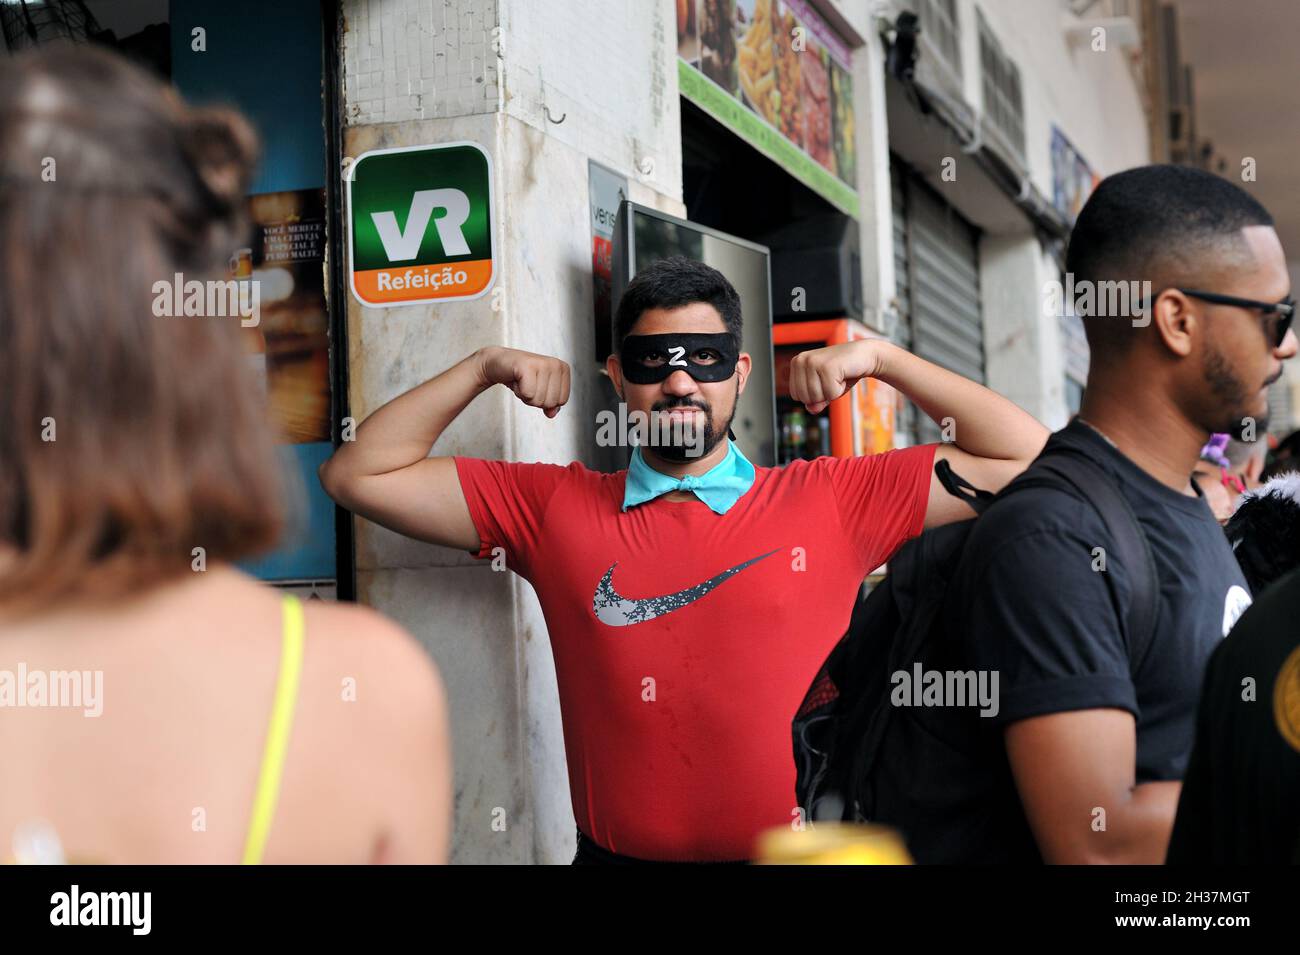 Sud America, Brasile – 22 febbraio 2020: L'uomo barbuto in maschera Zorro si esibisce per la macchina fotografica durante una sfilata di Carnevale di strada che si tiene nel centro di Rio de Janeiro Foto Stock